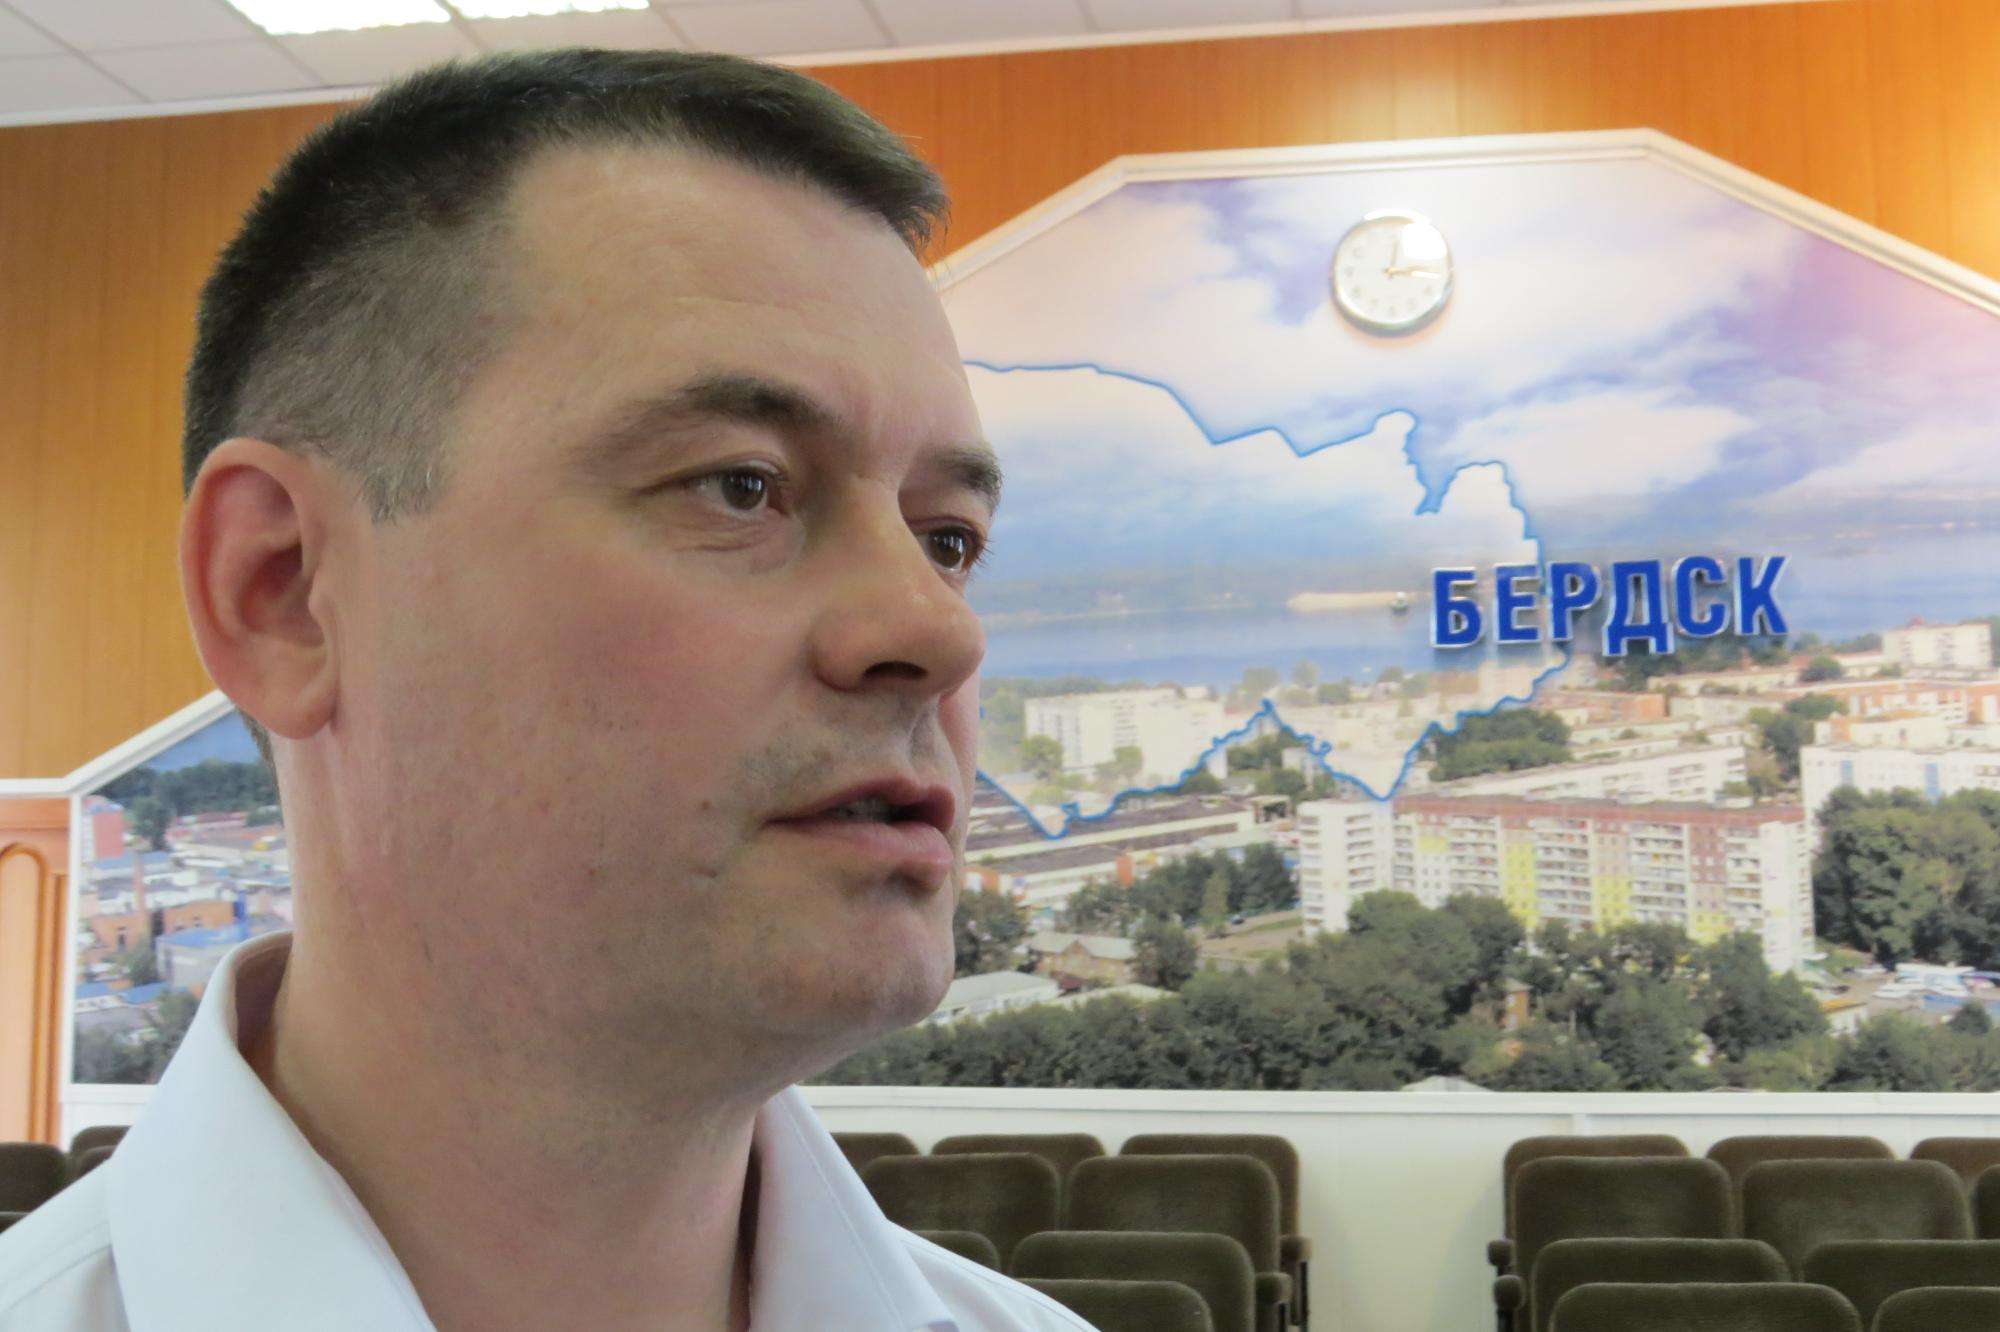 Извинился перед избирателями ставший вице-мэром Бердска бывший депутат Захаров